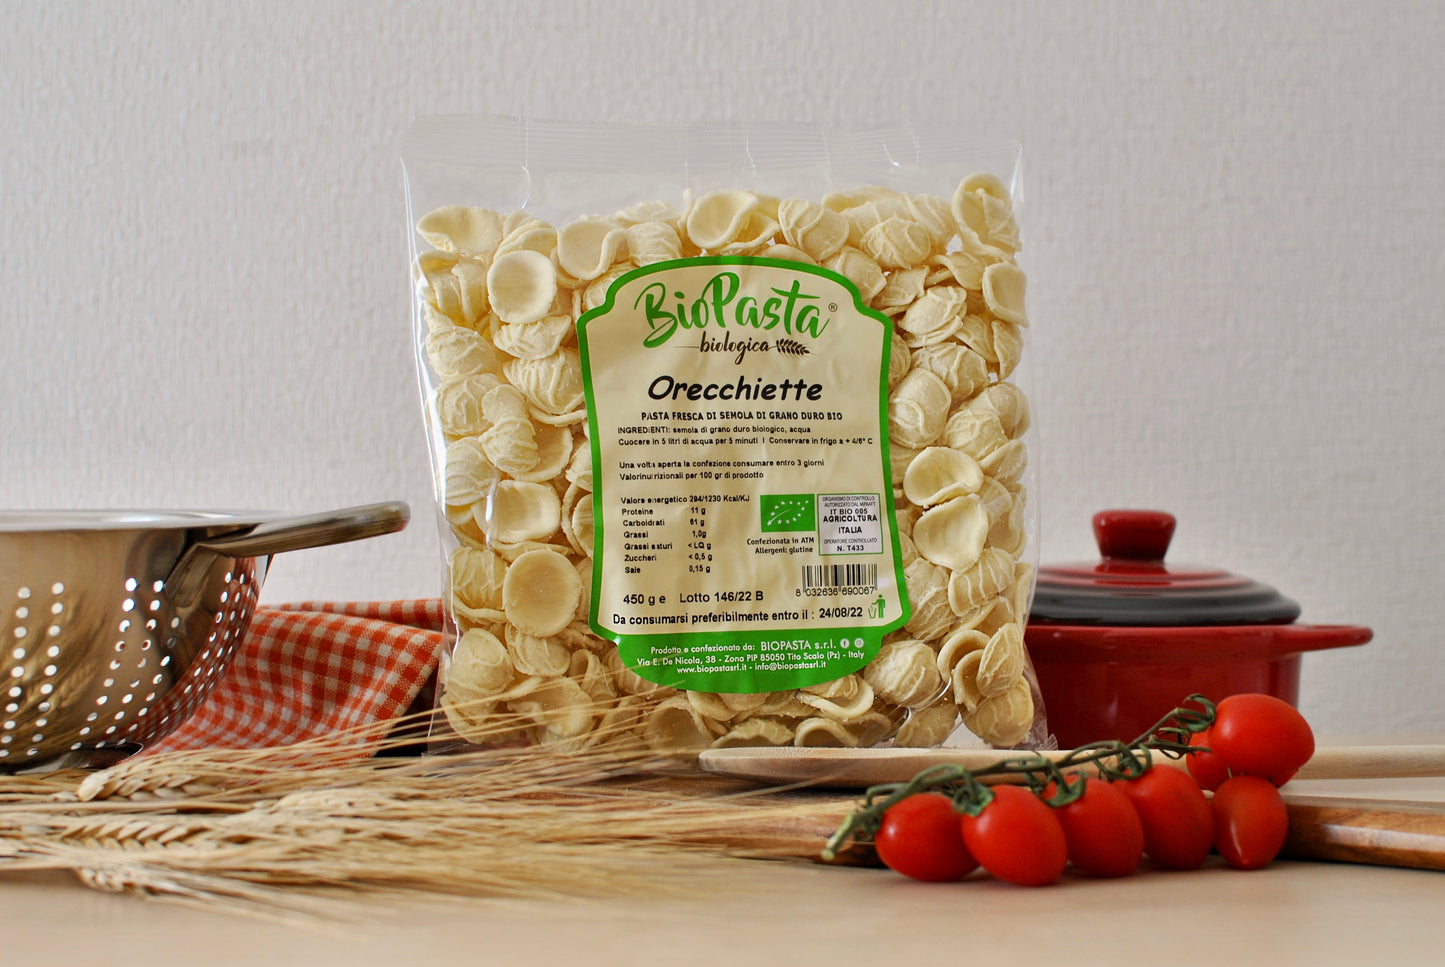 Orecchiette fresche biologiche pasta artigianale tipica lucana